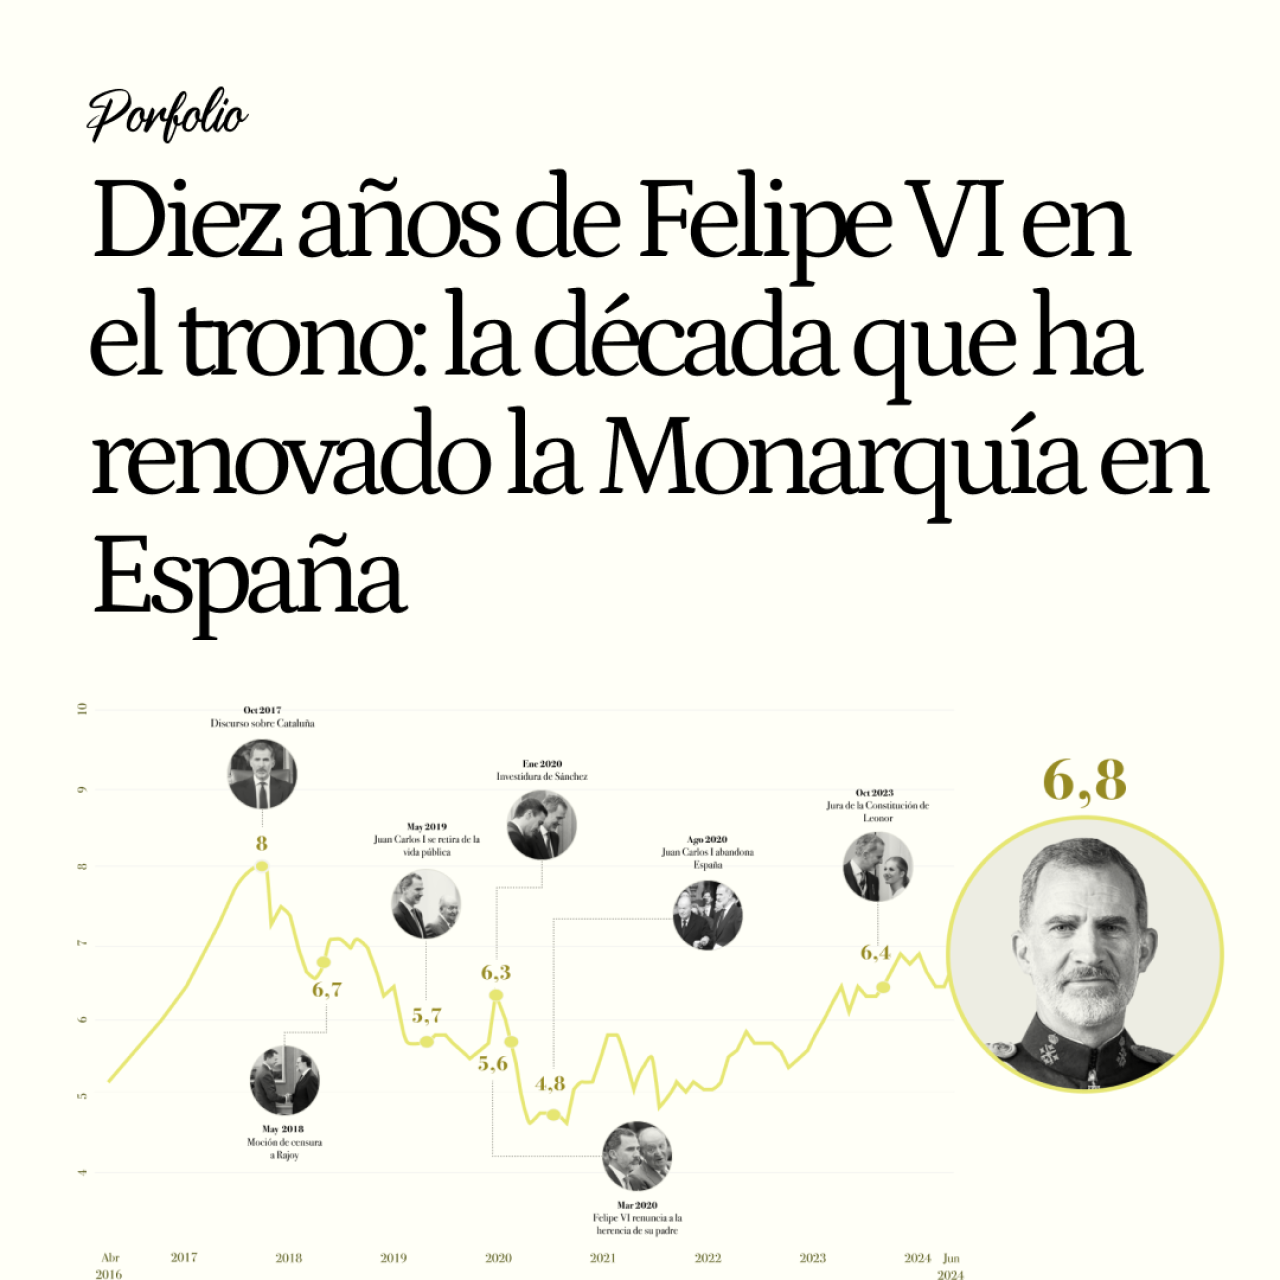 Diez años de Felipe VI en el trono: la década que ha renovado la Monarquía en España